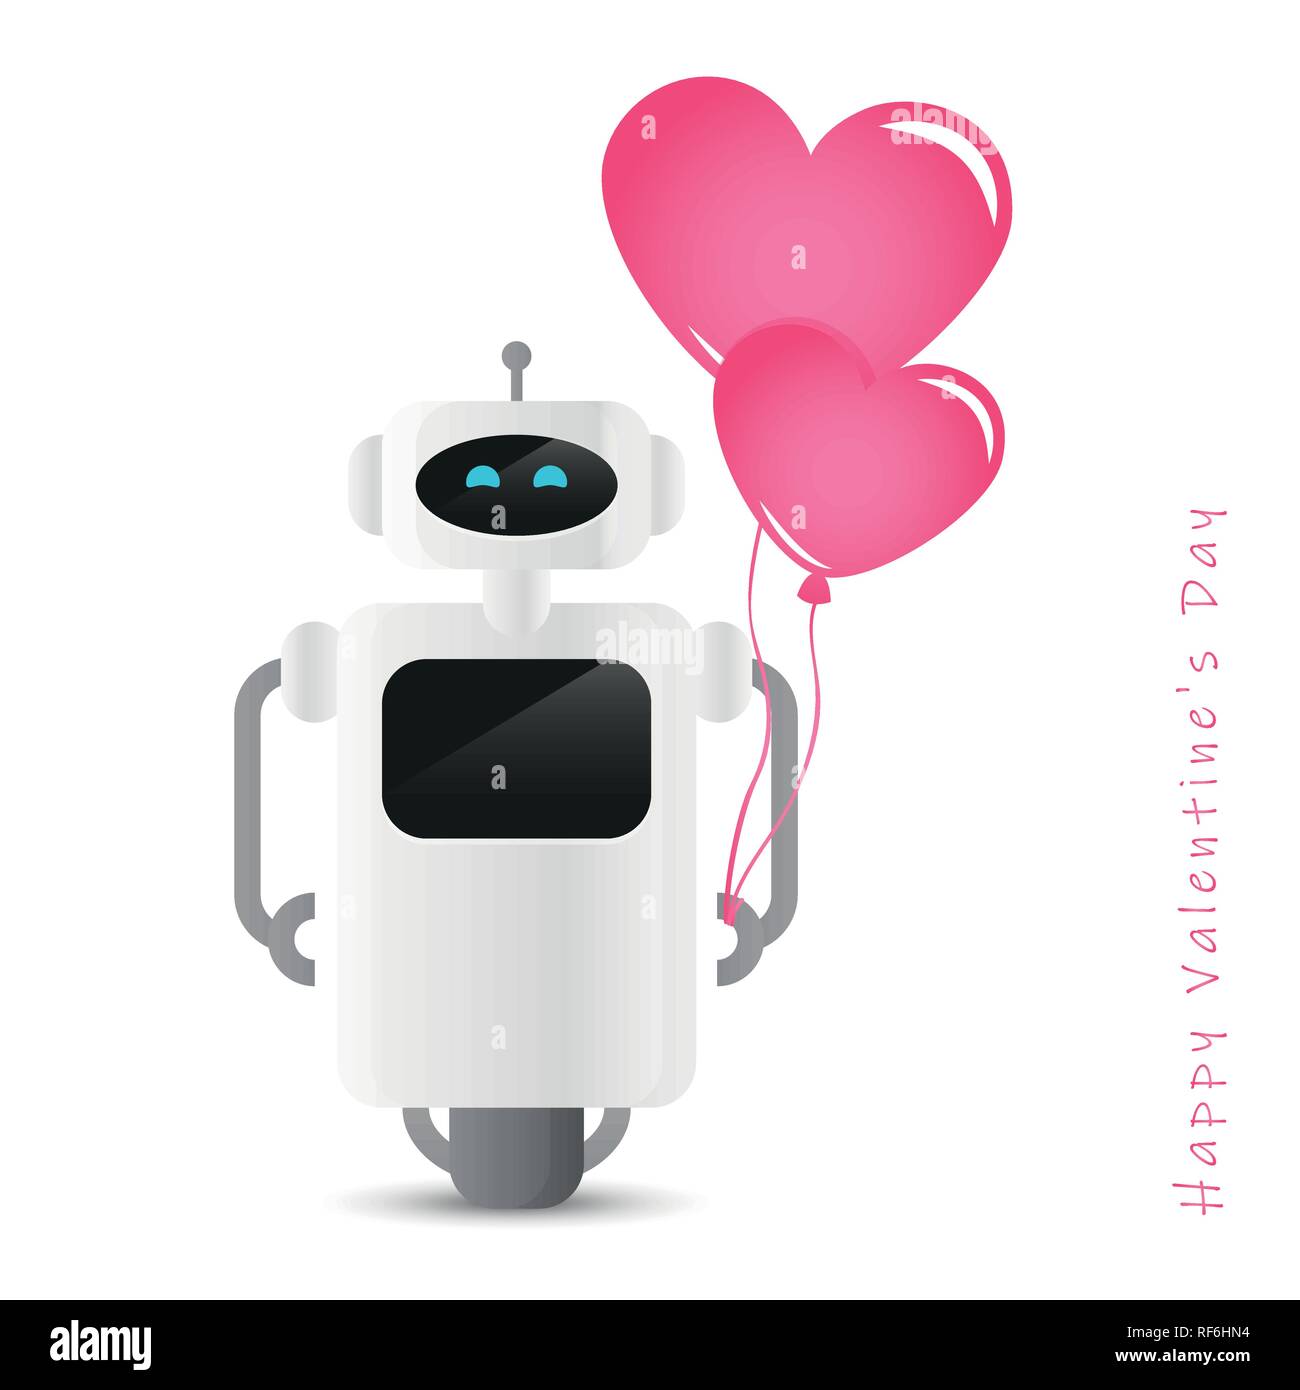 Robot mignon holding heart shaped balloon rose pour la Saint-Valentin design illustration vecteur EPS10 Illustration de Vecteur